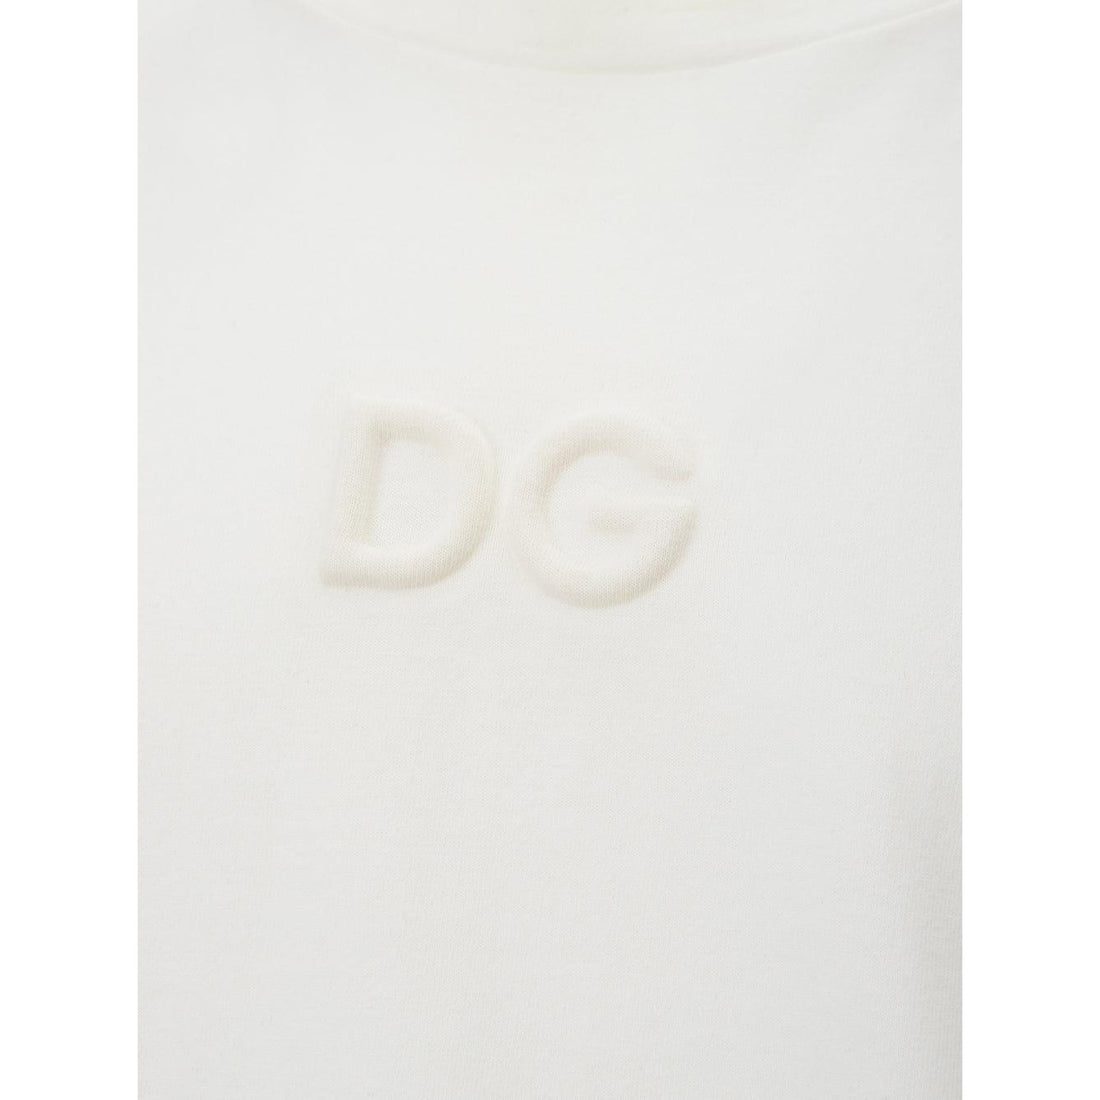 Dolce & Gabbana Elegant White Cotton Tee with 3D Logo